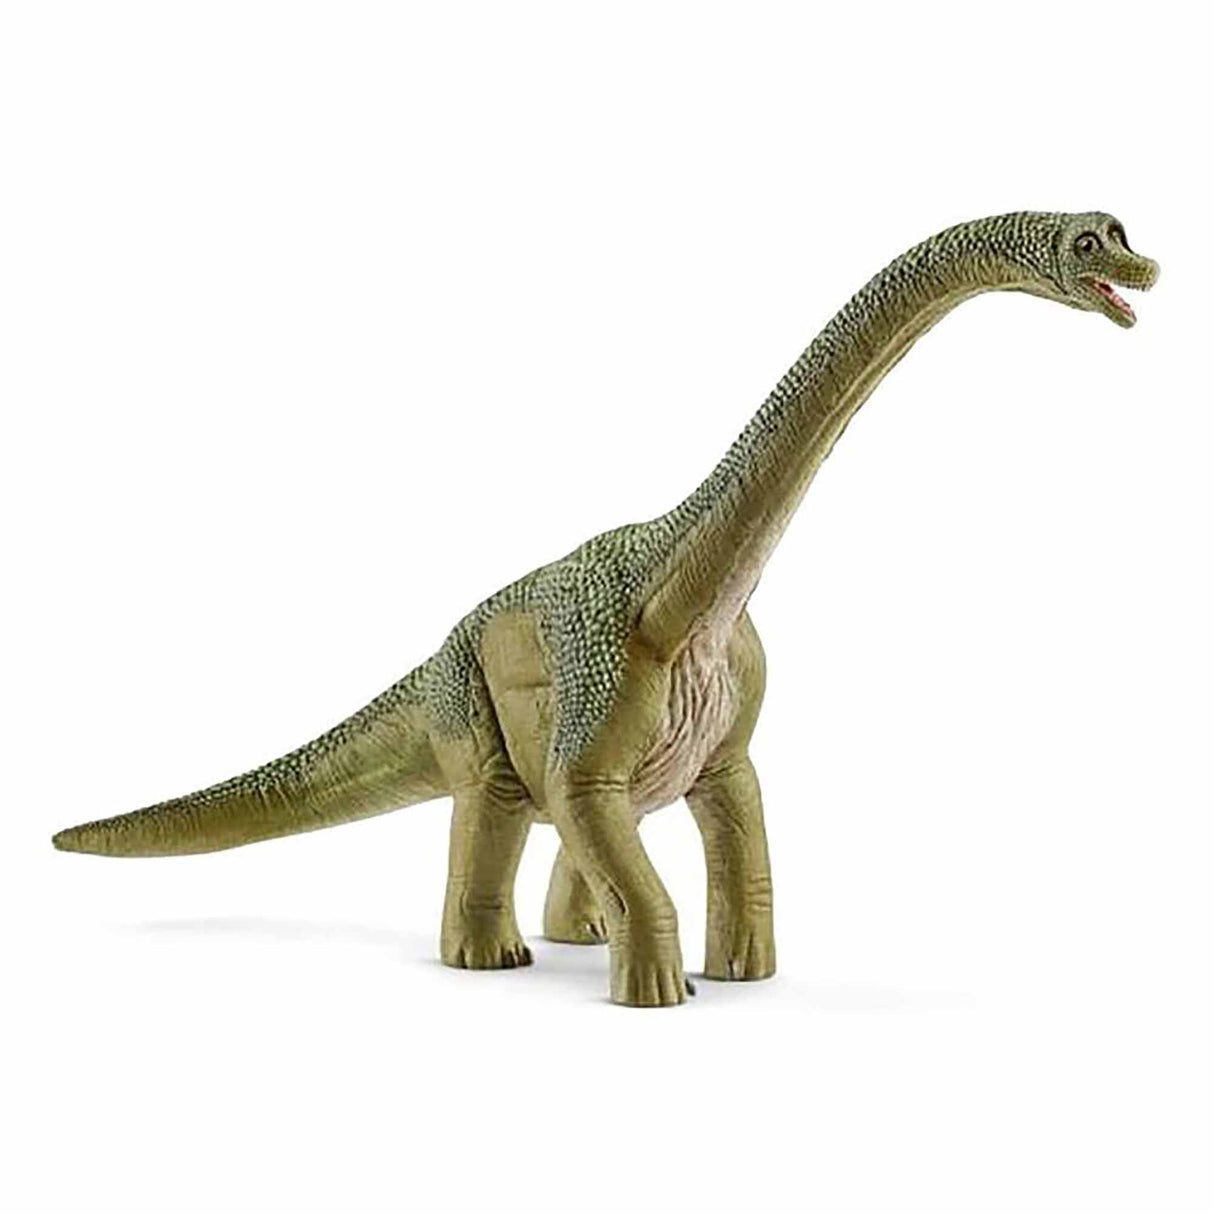 Schleich Brachiosaurus Dinosaur Figure